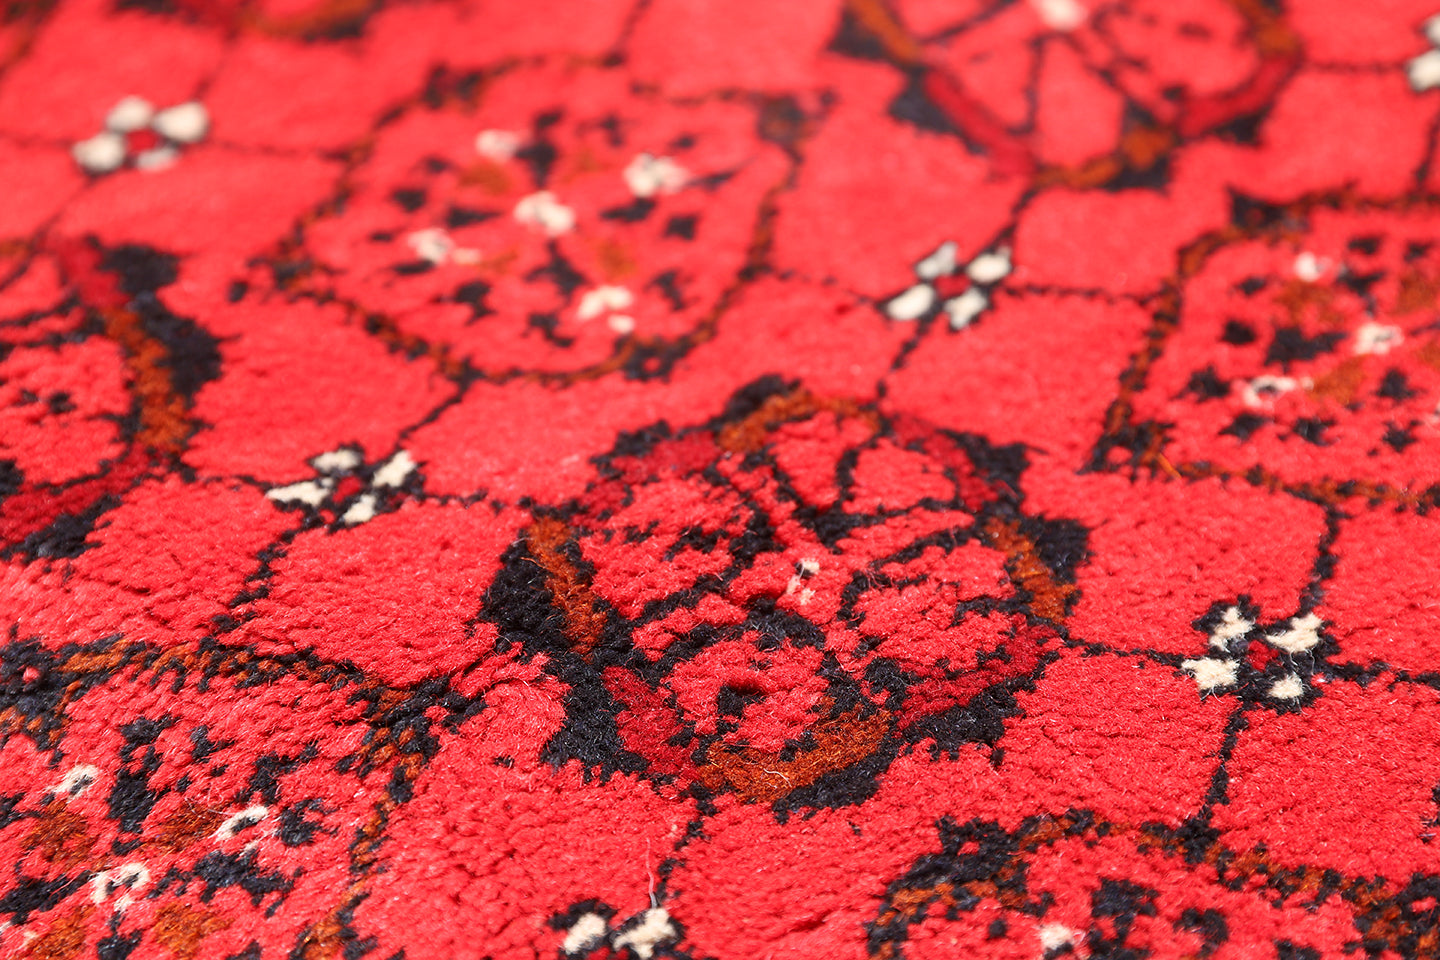 8'x12' Red Afghan Bashiri Rug